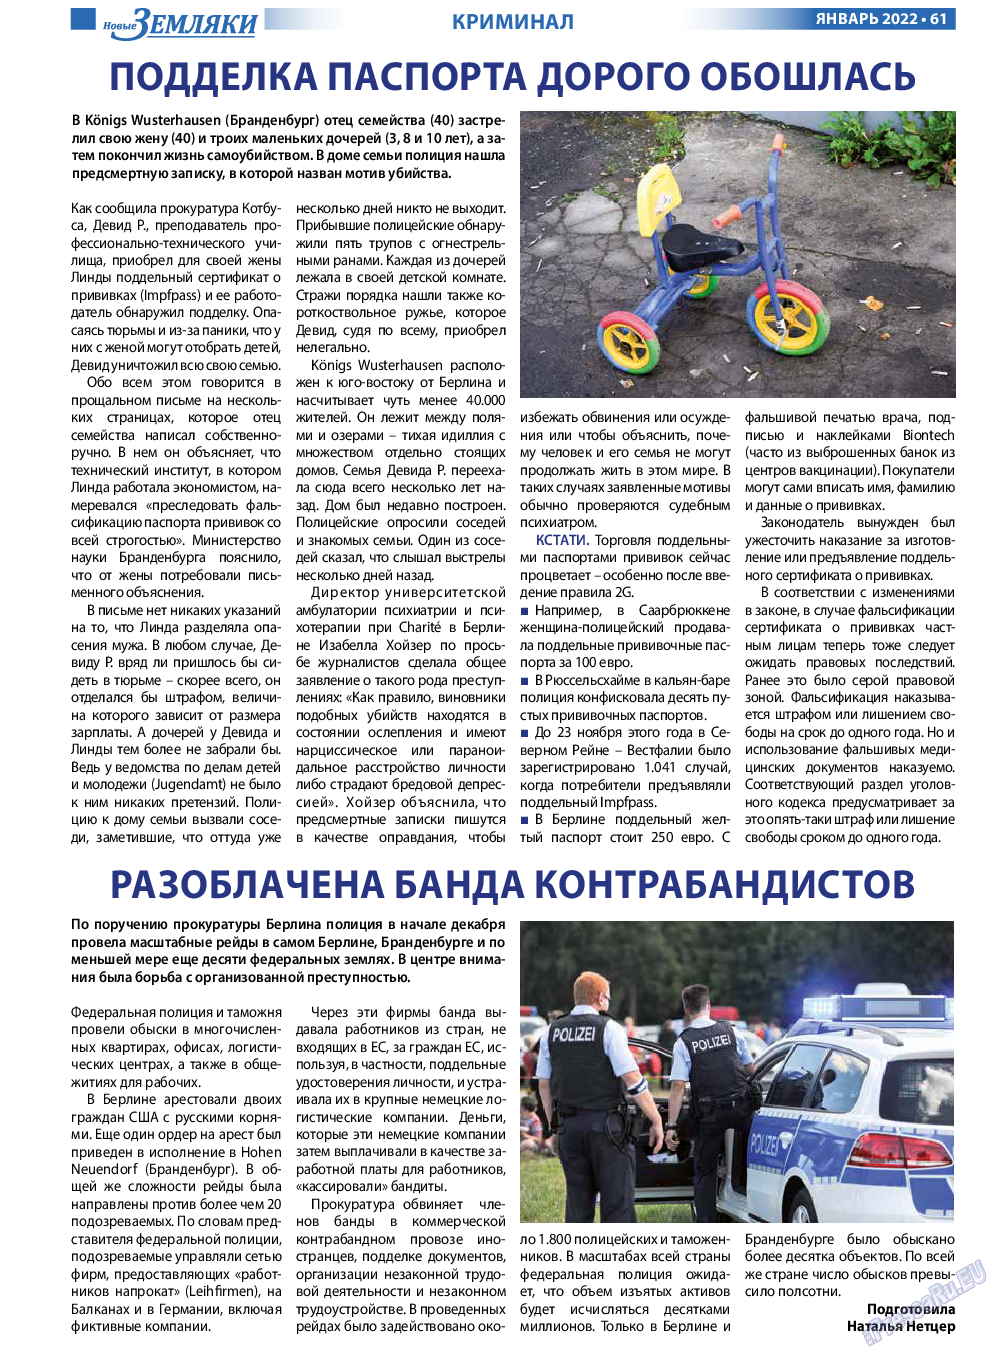 Новые Земляки, газета. 2022 №1 стр.61